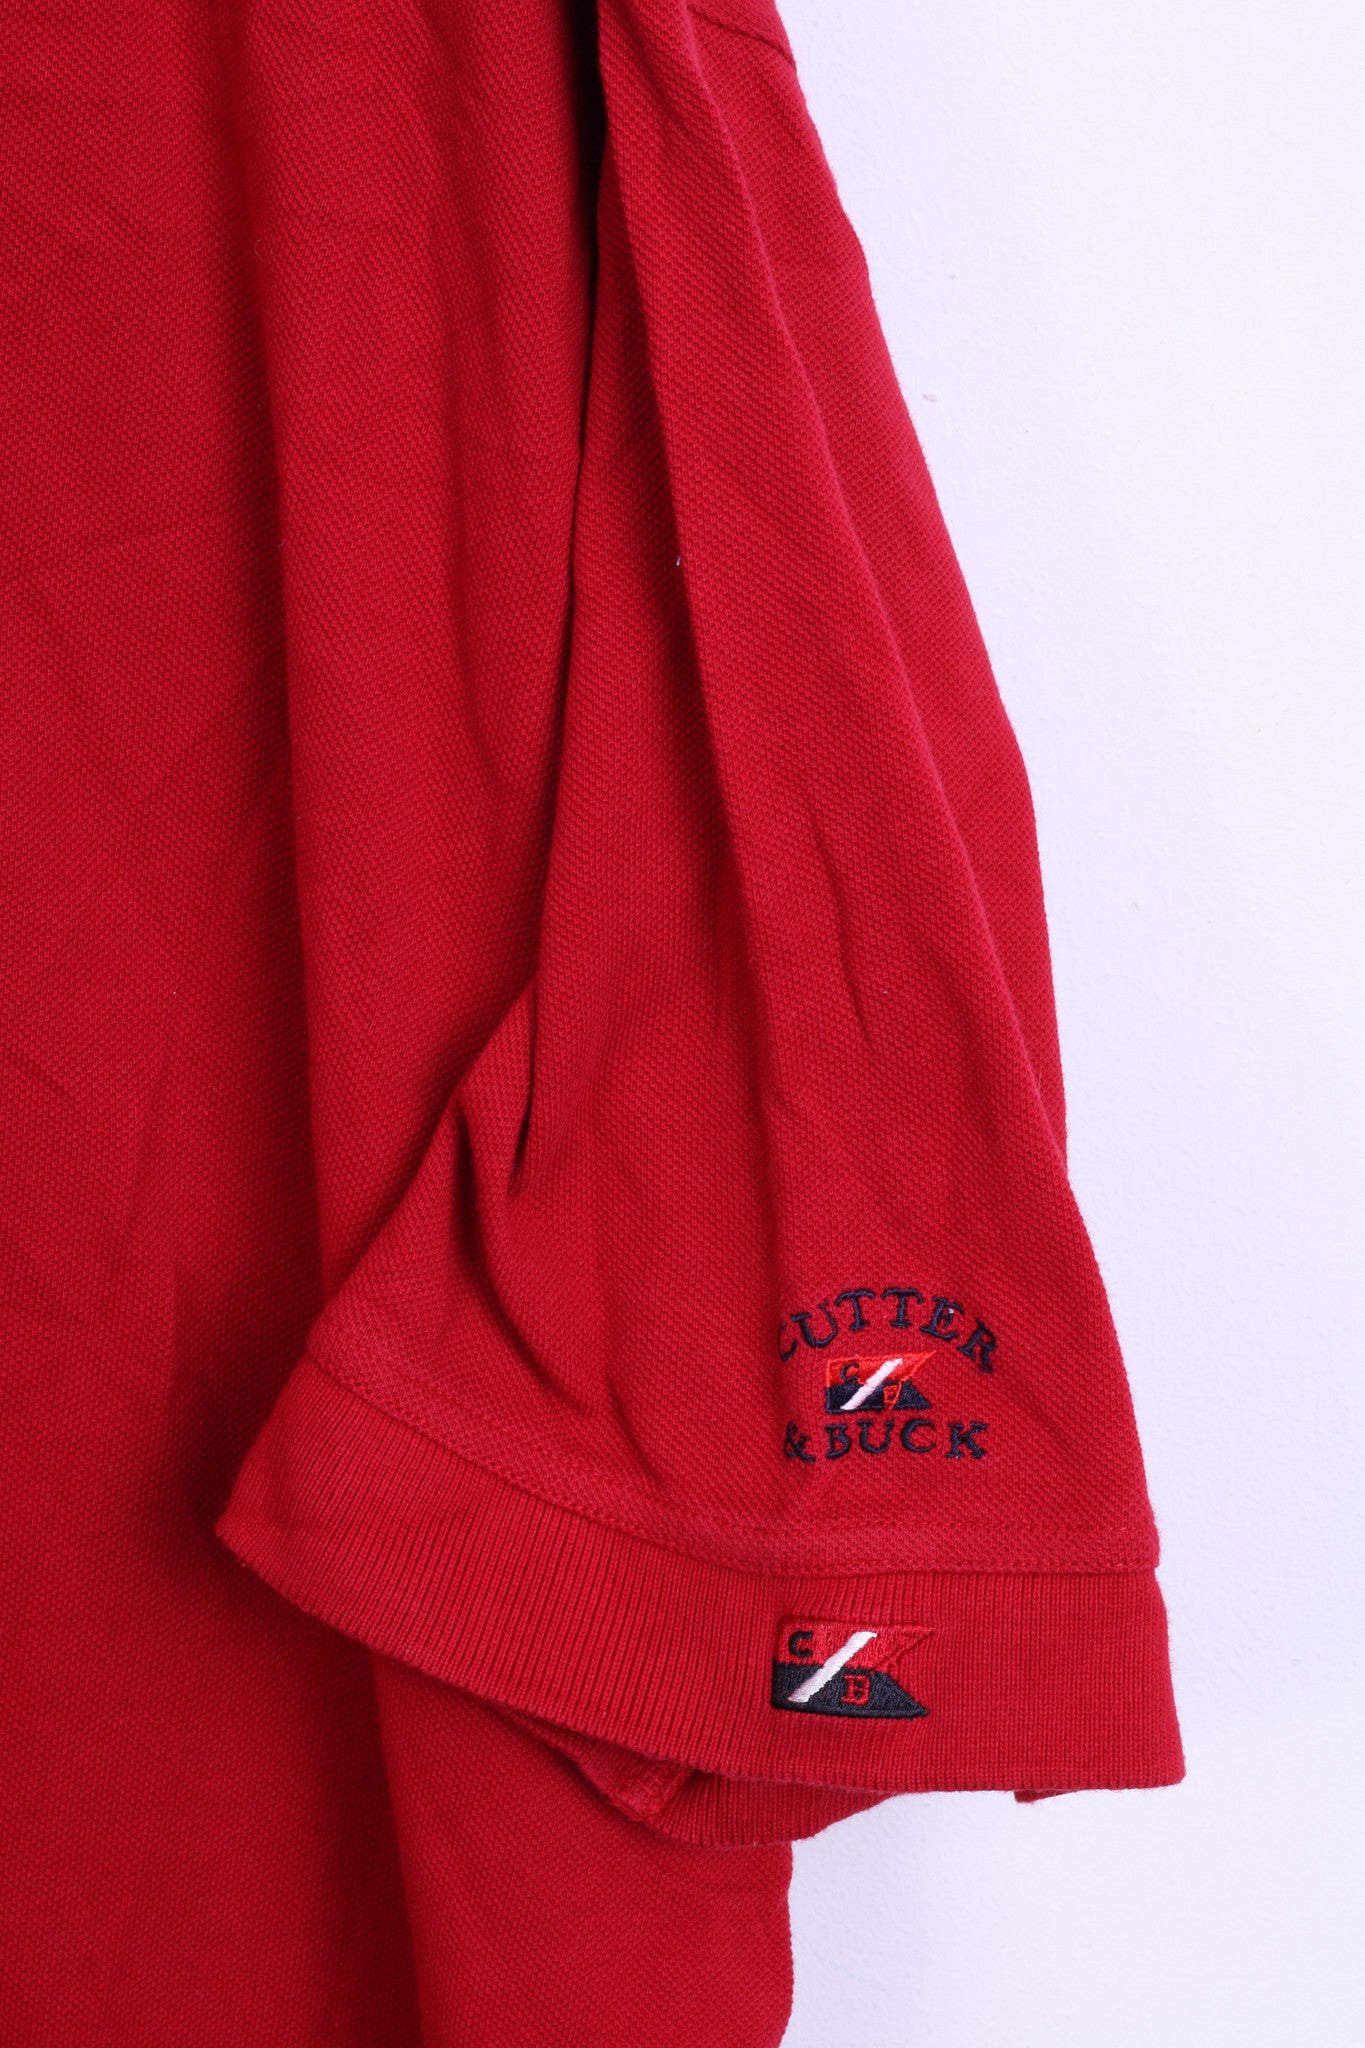 Cutter & Buck Mens XL Polo Shirt Red Cotton Top Jersey Big & Tall - RetrospectClothes